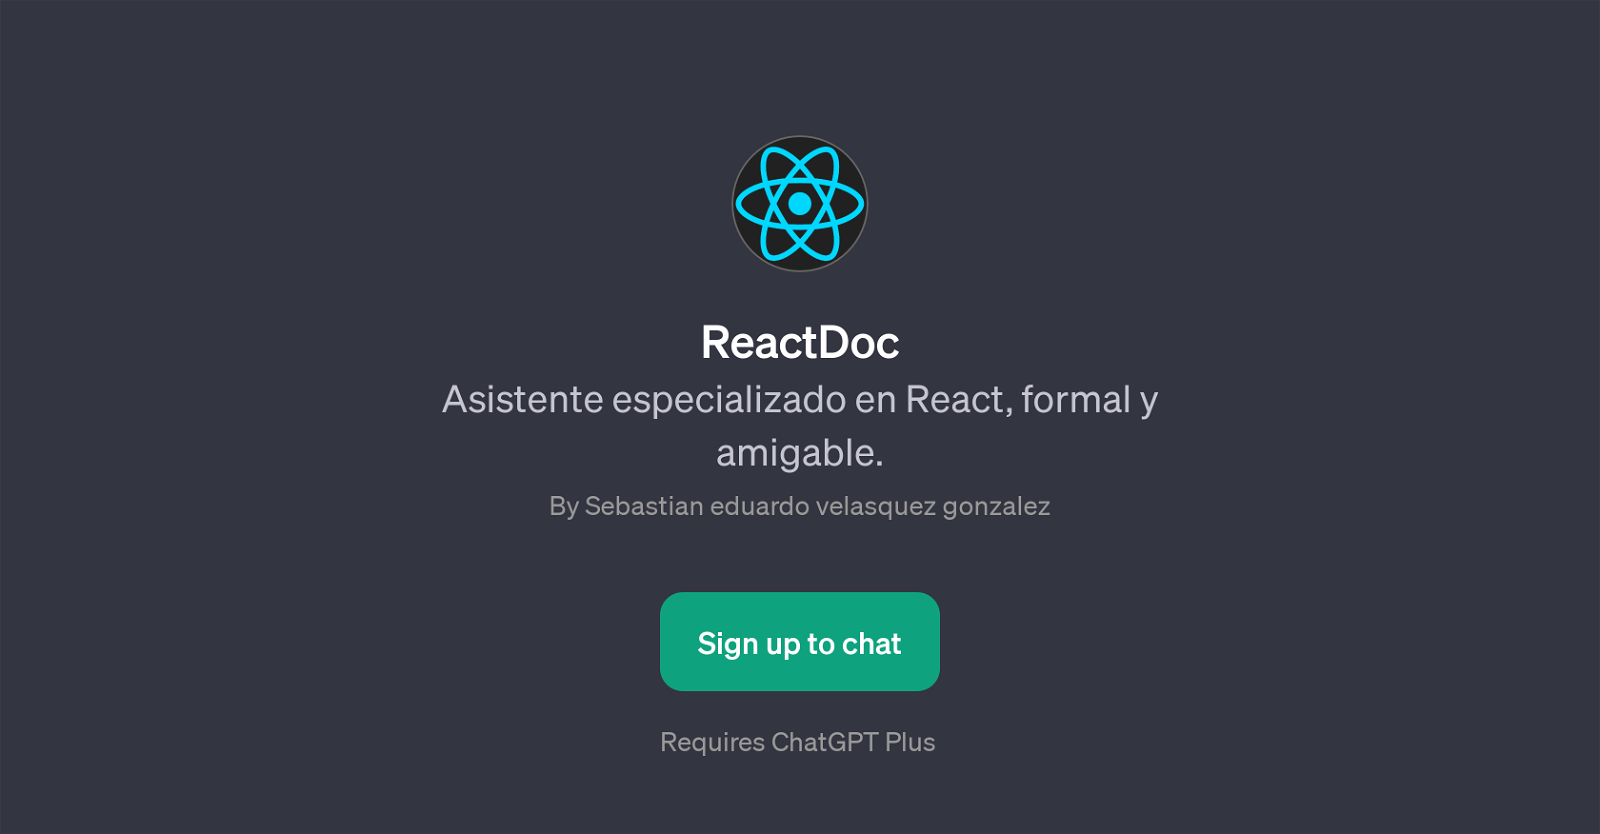 ReactDoc website